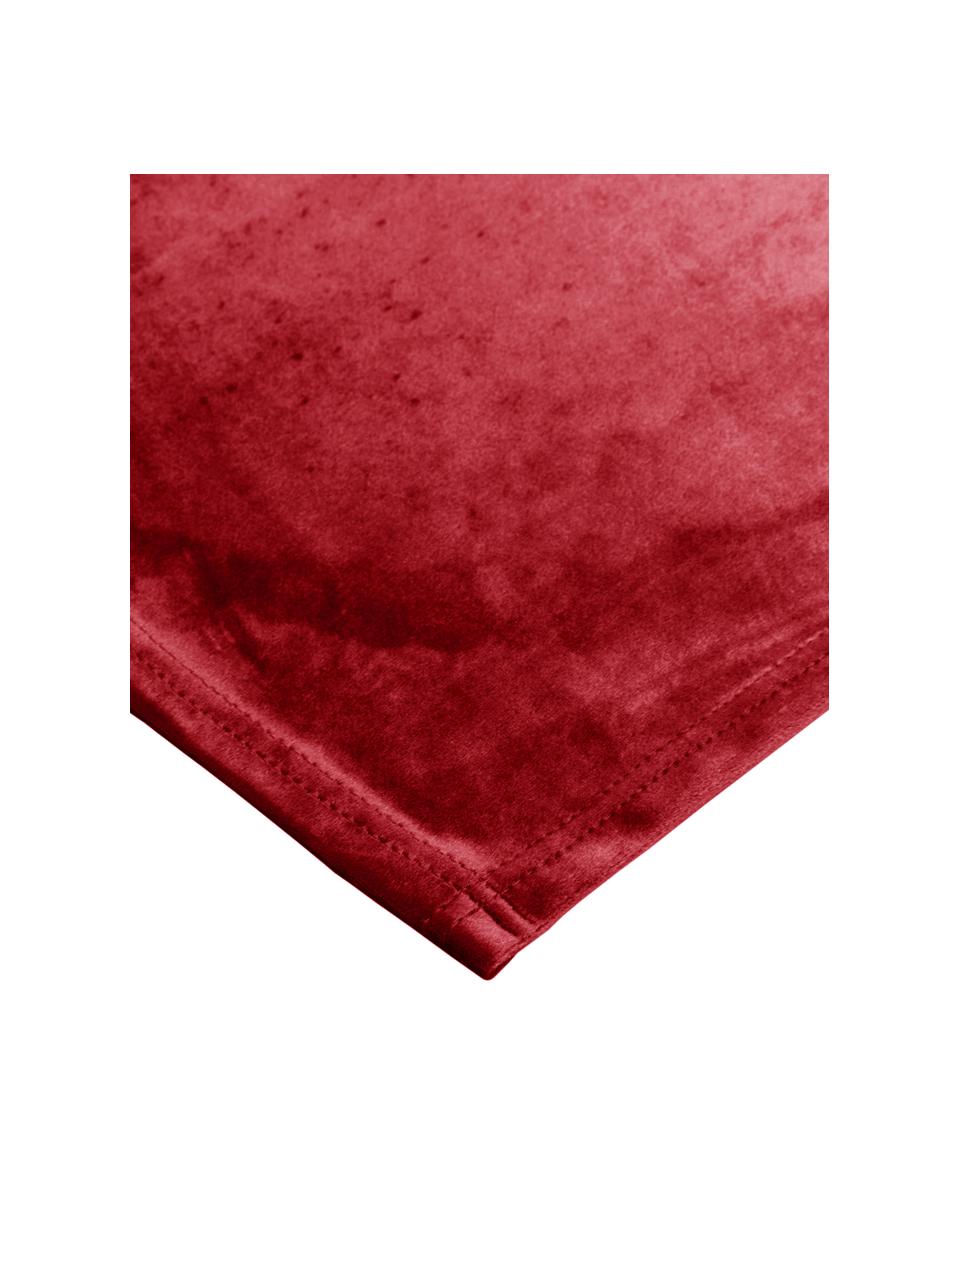 Samt-Tischsets Simone, 2 Stück, 100% Polyestersamt, Rot, 35 x 45 cm